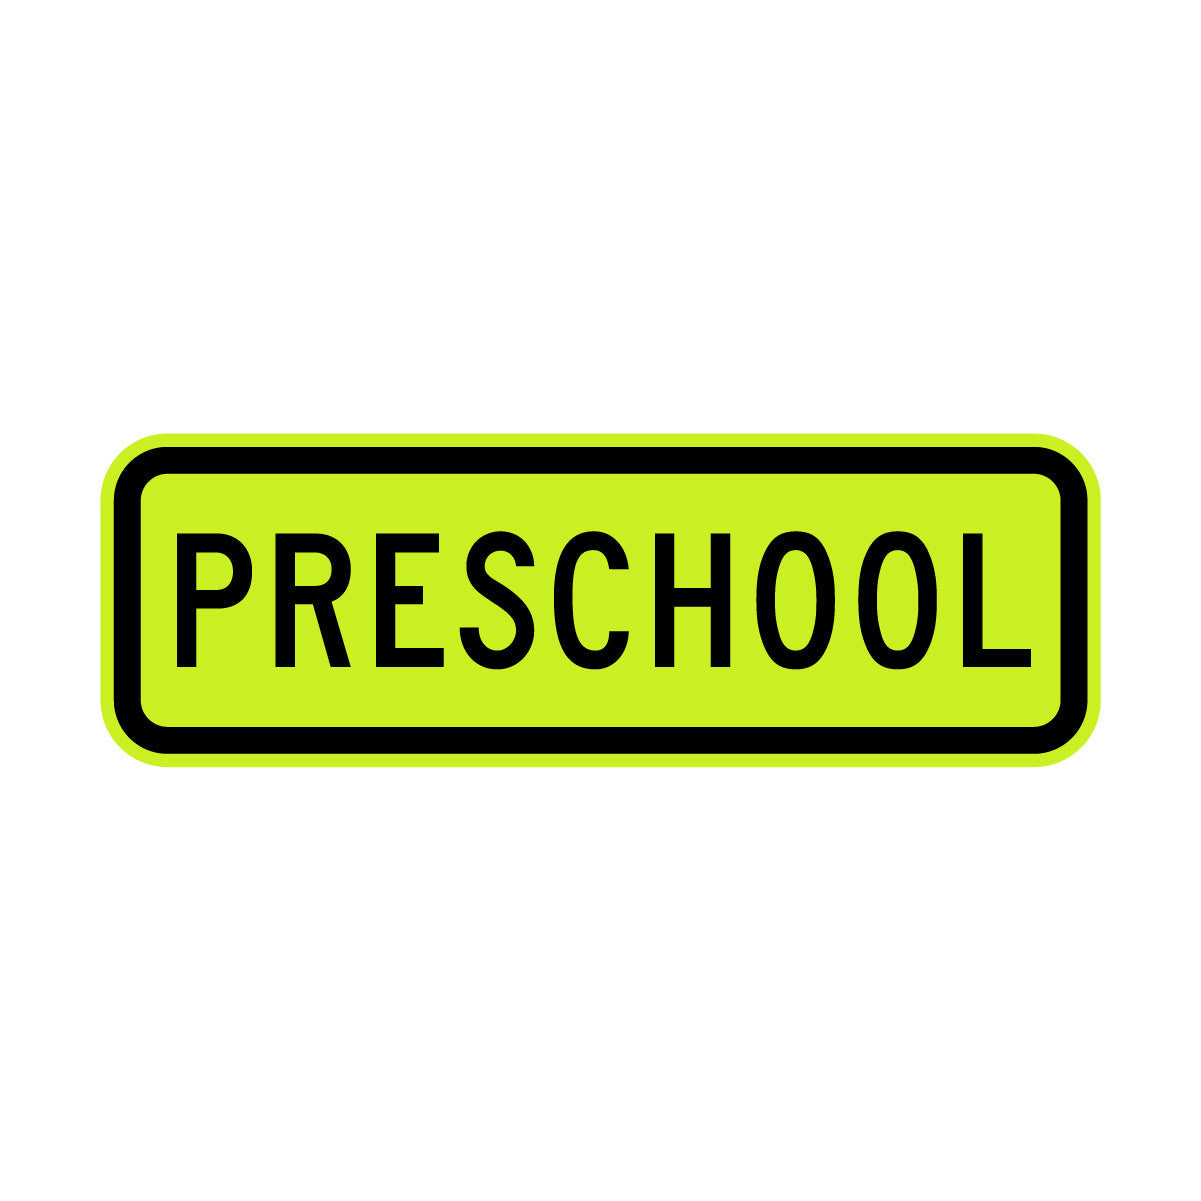 Warning: Preschool Sign